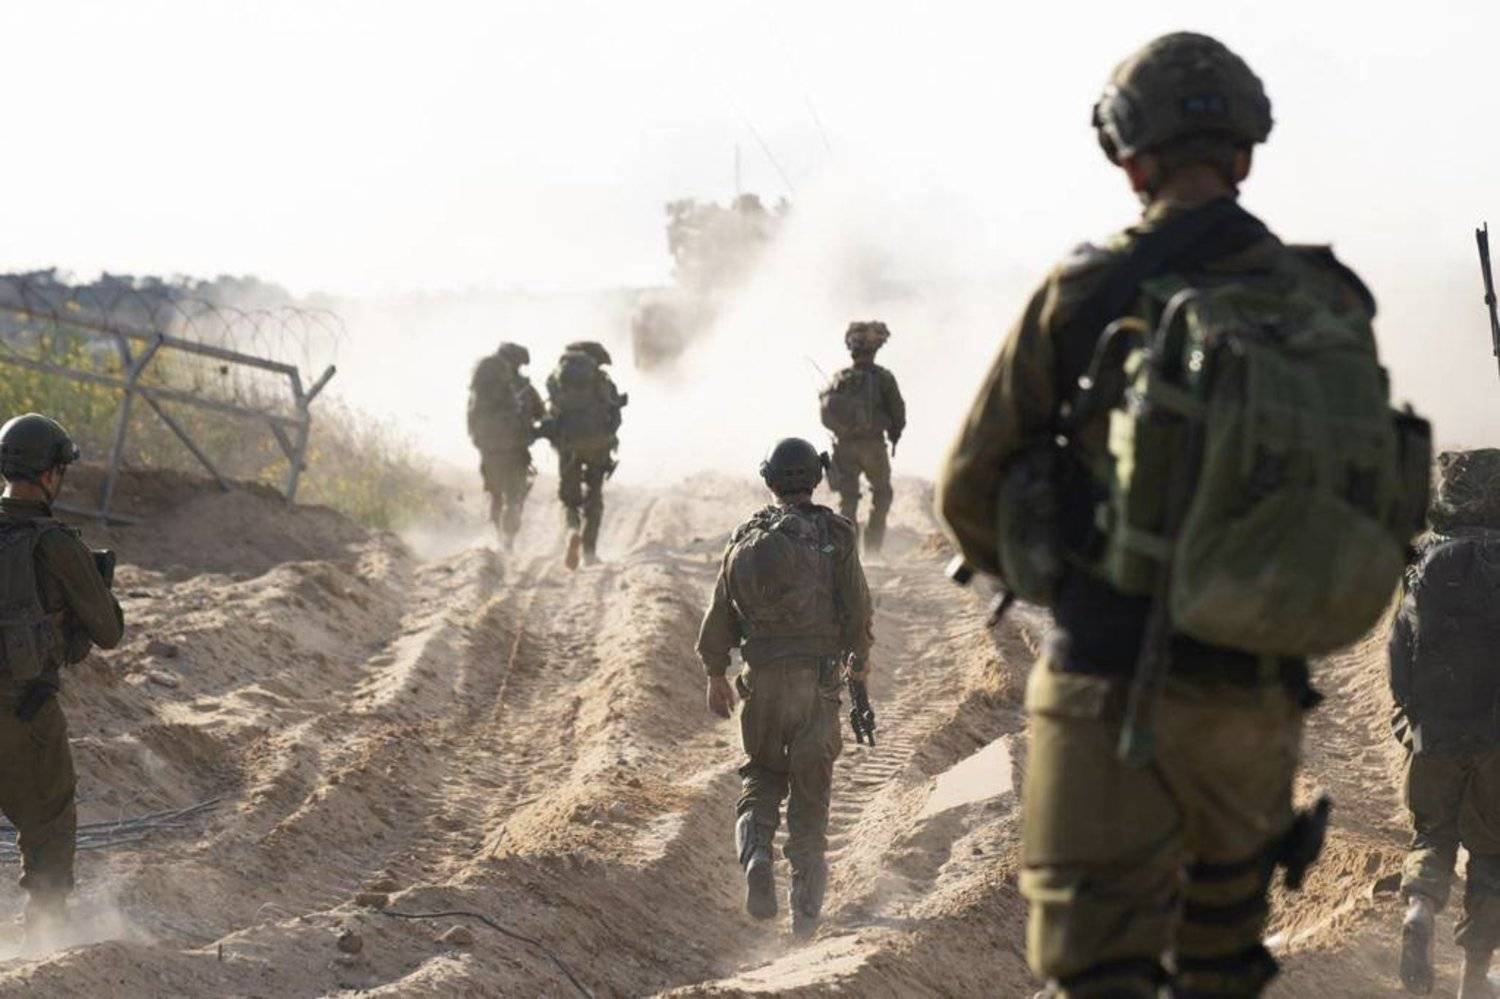 دورية راجلة للقوات الإسرائيلية داخل قطاع غزة (أ.ب)